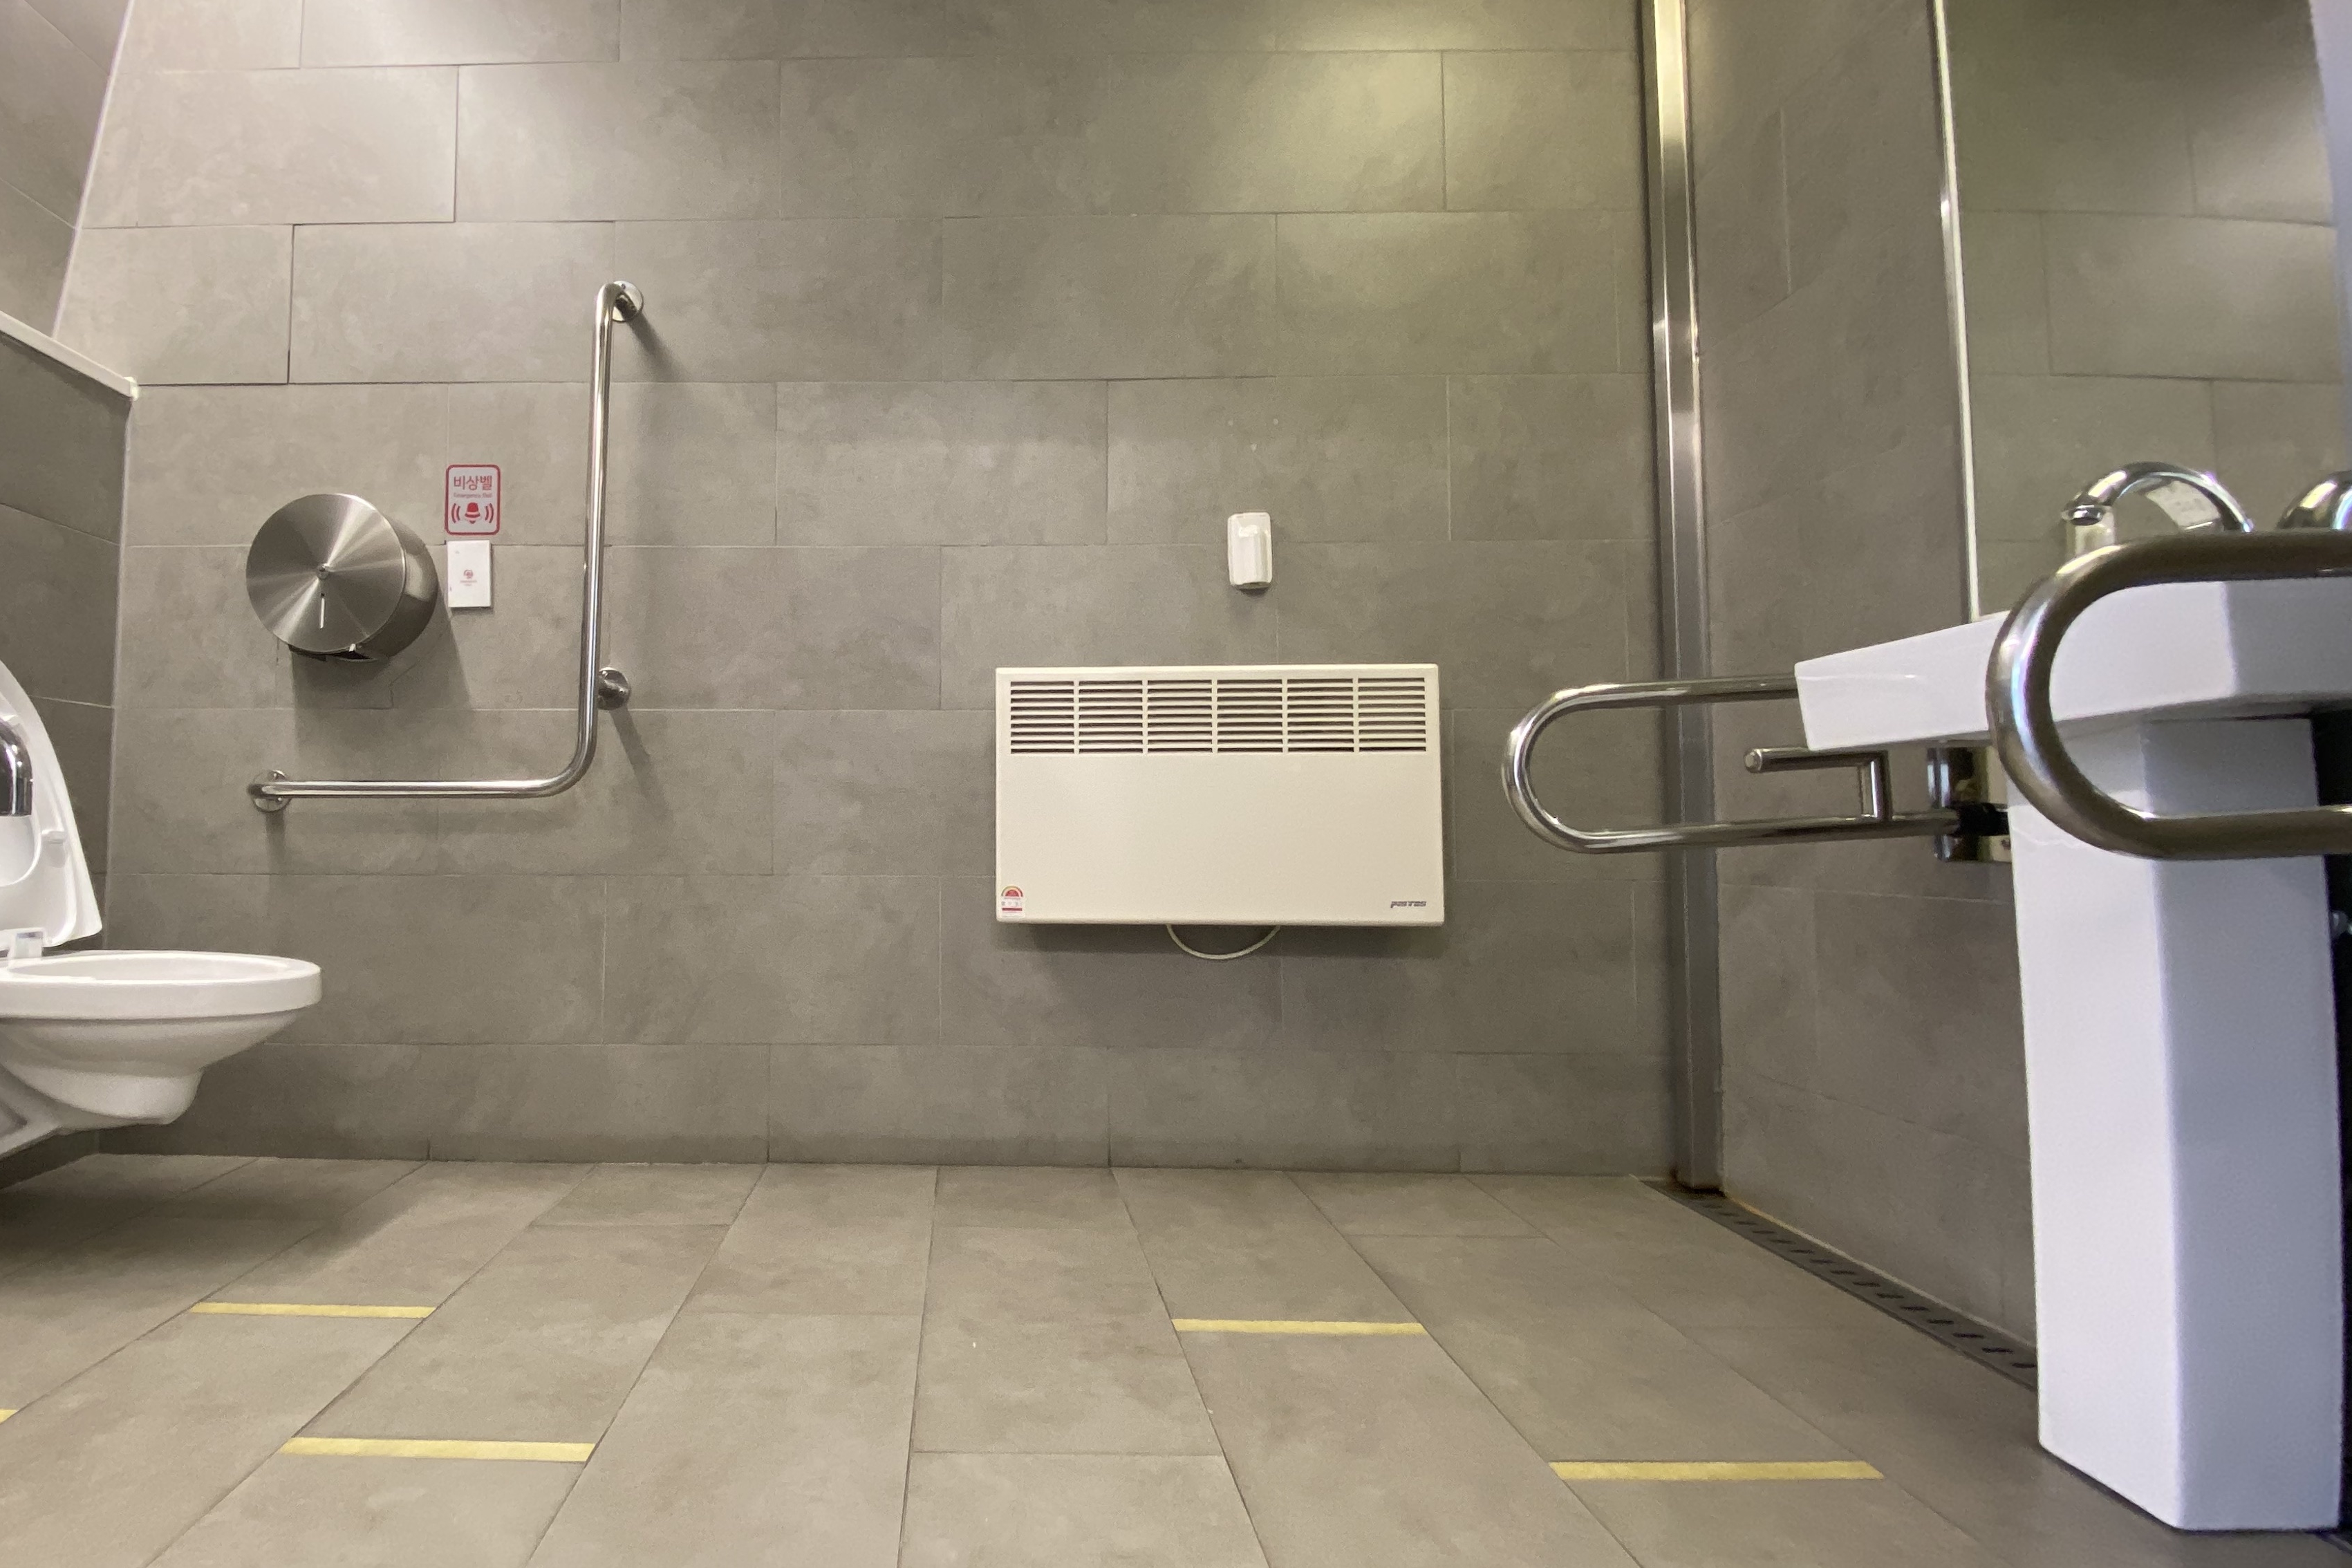 인근 장애인화장실0 : 공간이 넓어 휠체어 사용 가능한 장애인화장실 내부 모습
